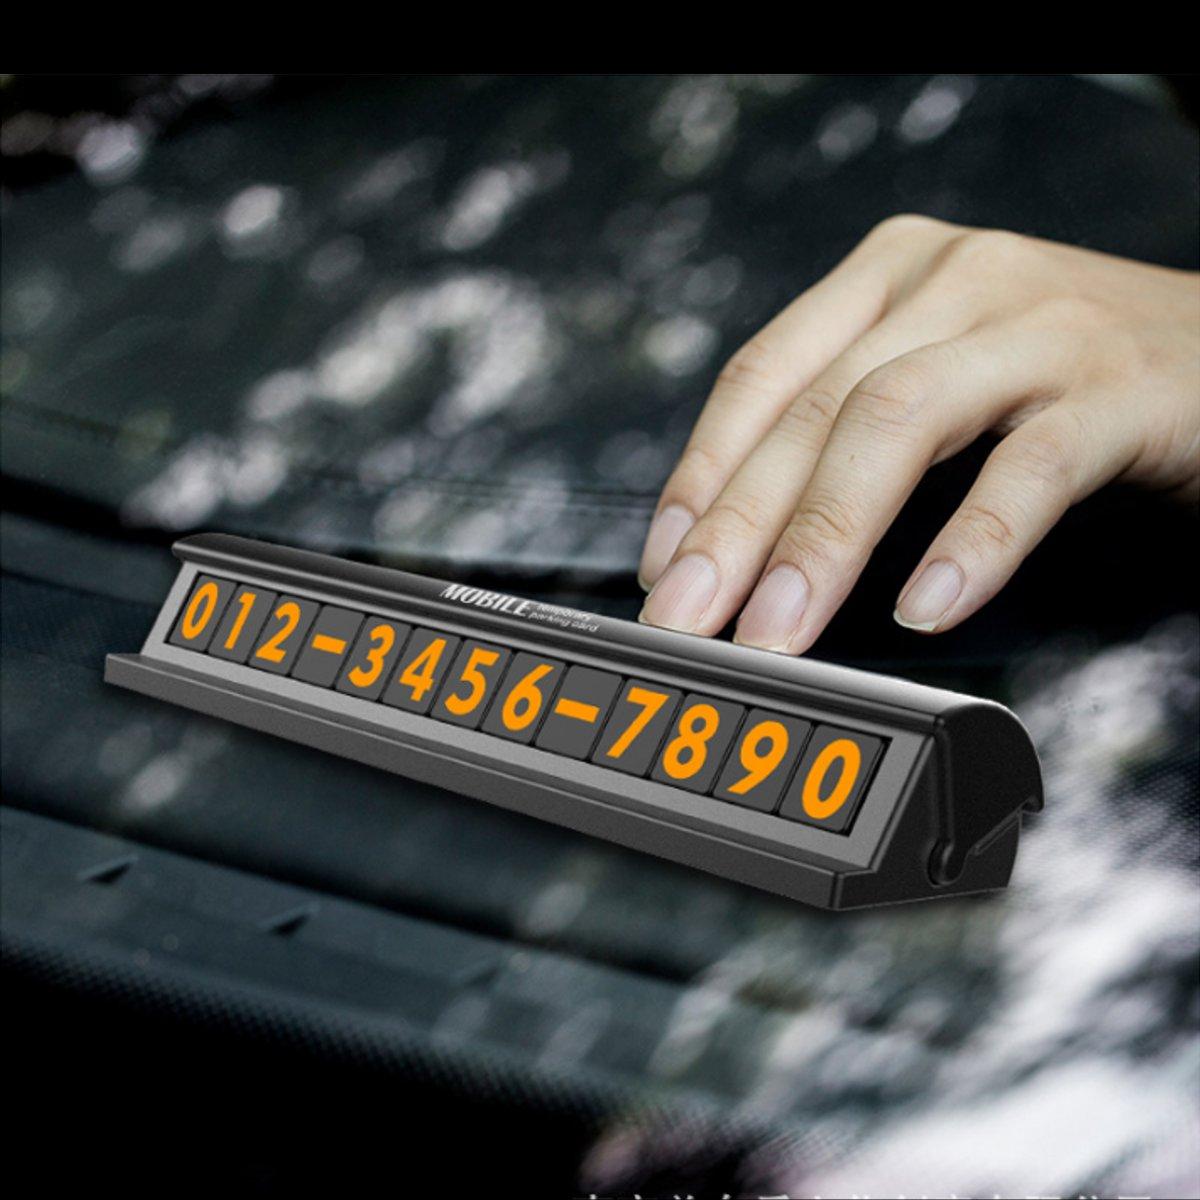 

Люминесцентный черный серебристый спрятанный Авто Временный номер телефона для парковки Автоd Пластина